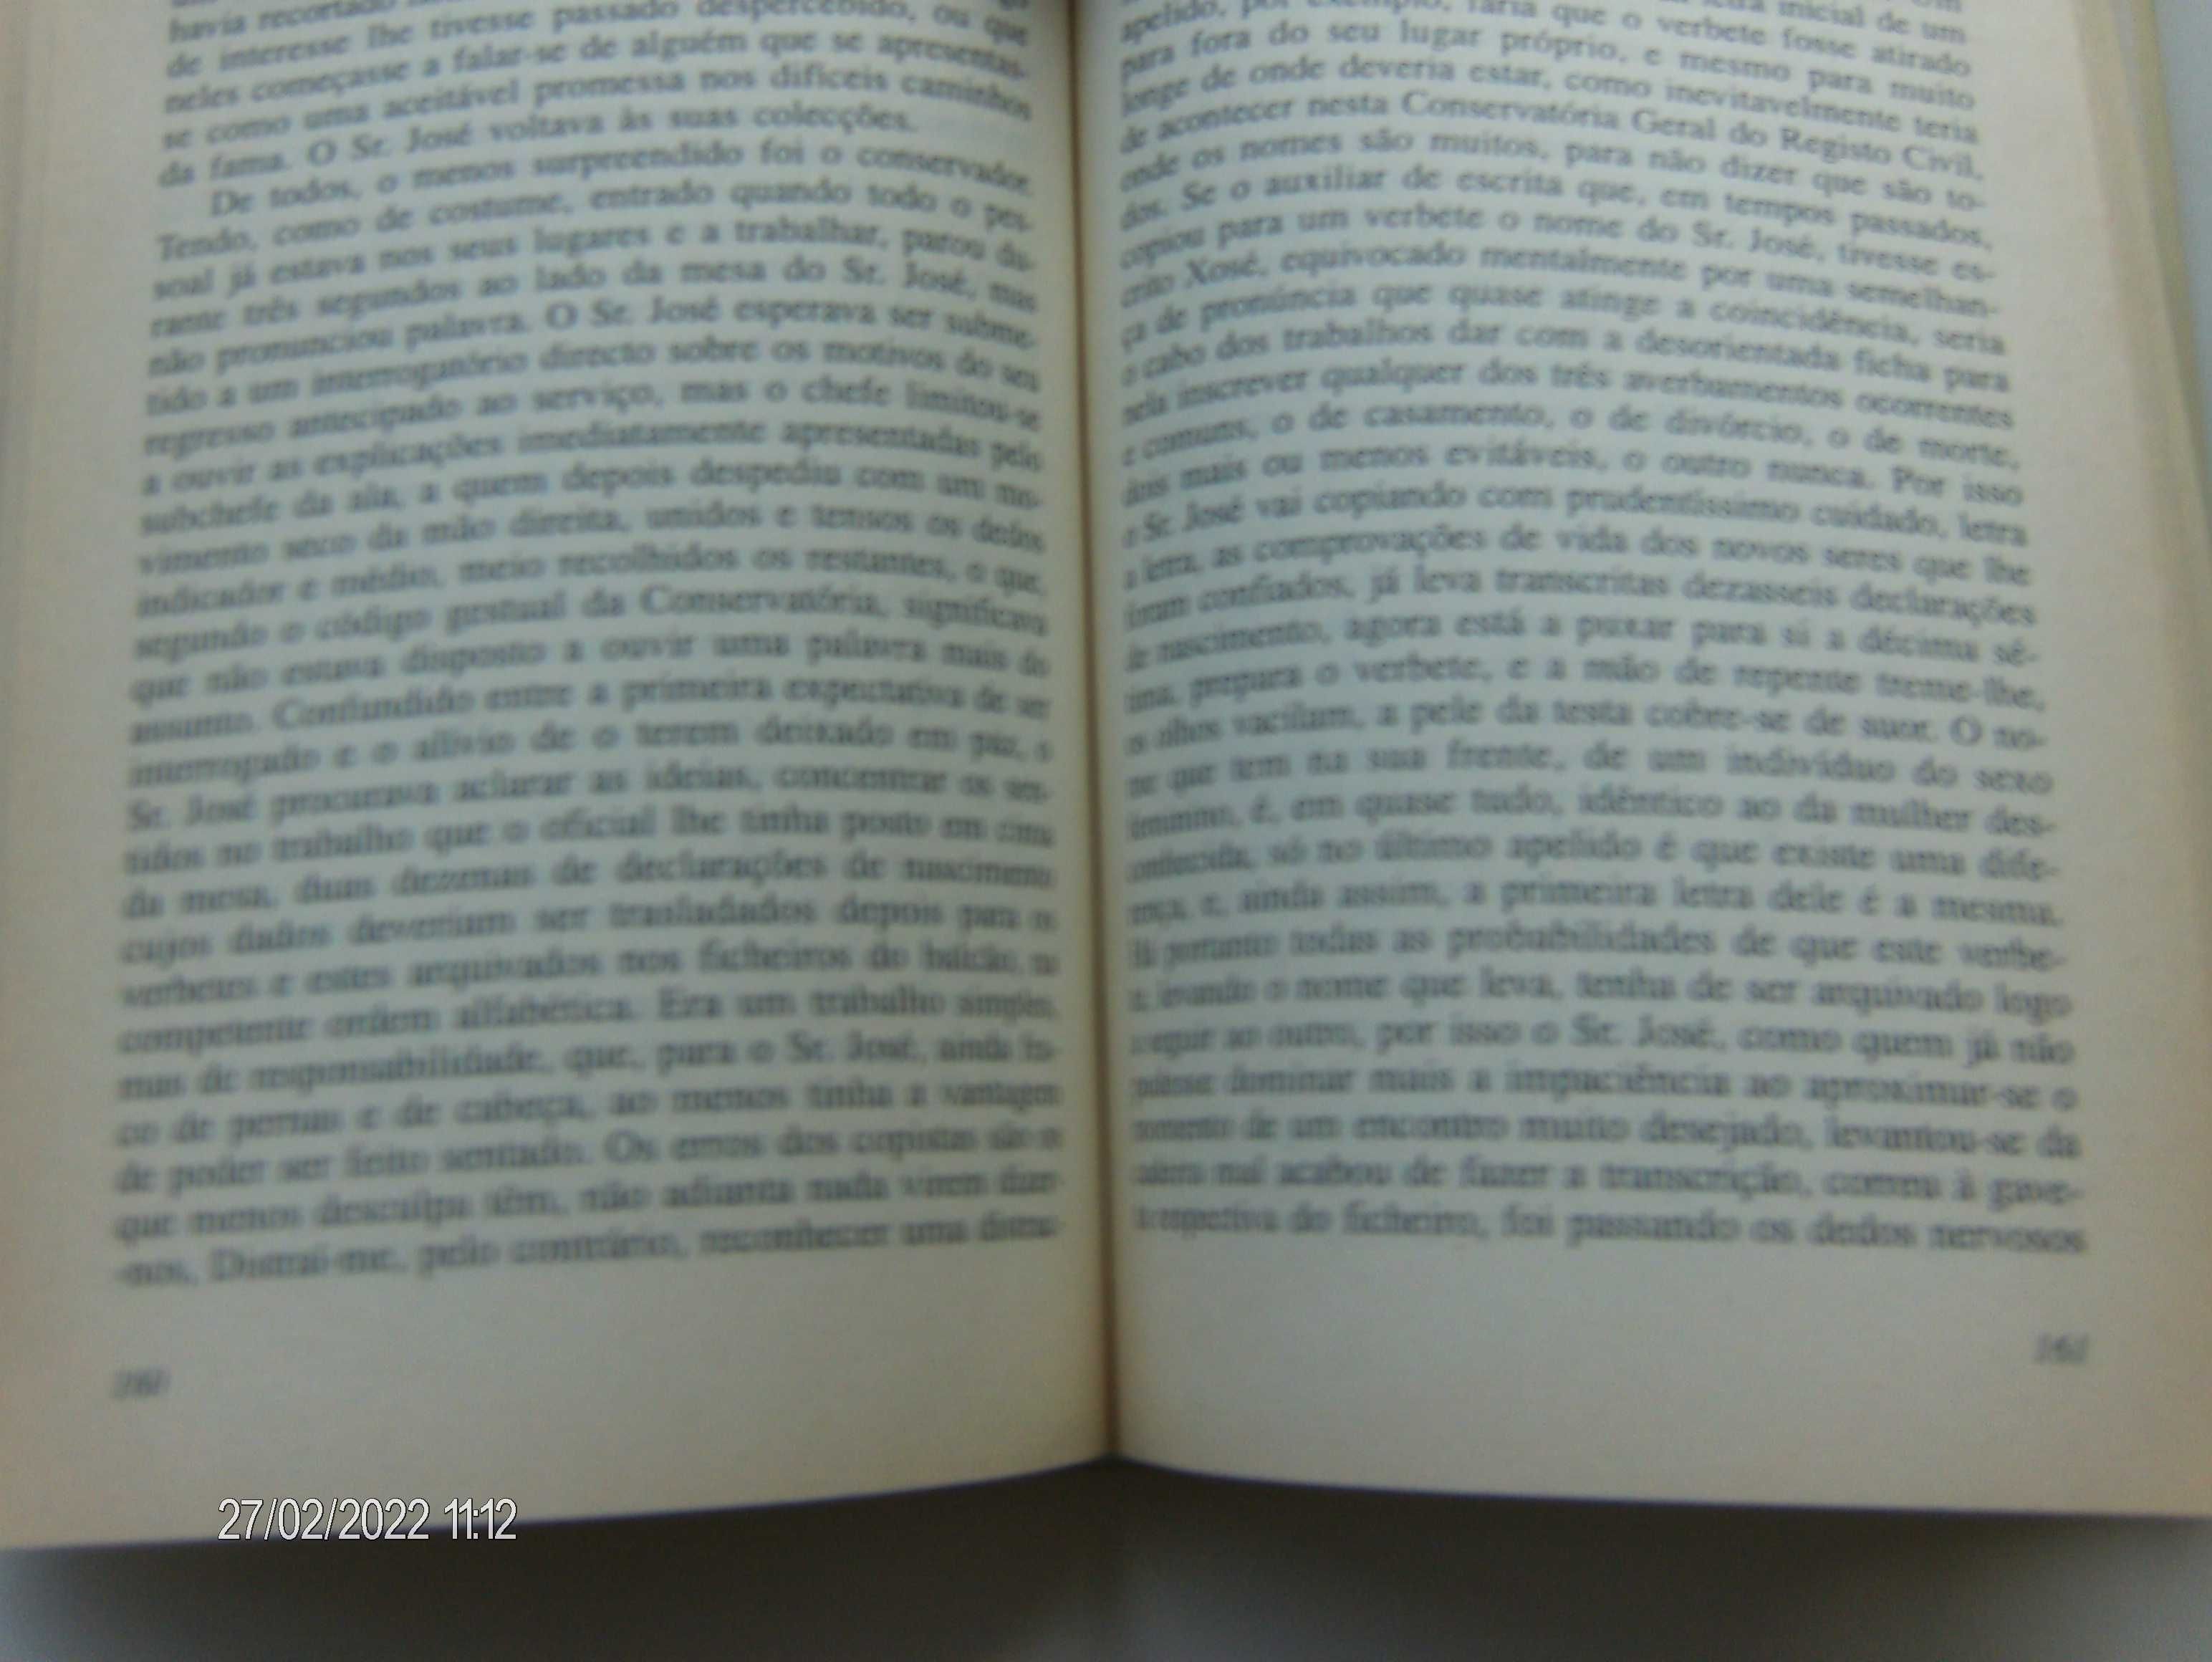 Livros Obras Completas de Julio Dinis - Livros I e II